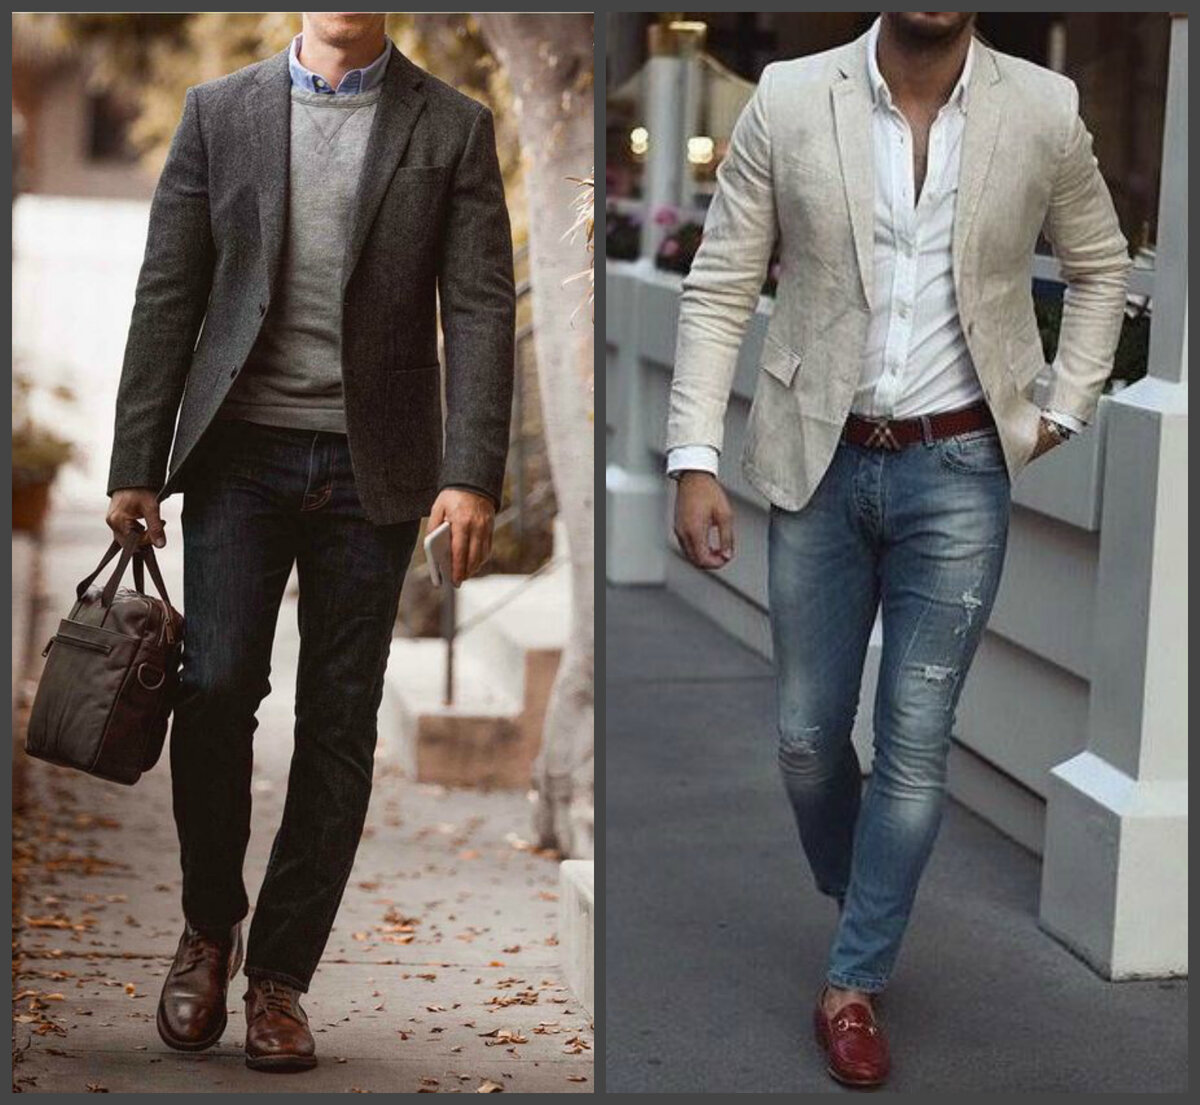 Дресс-код для мужчин - разбираемся в стиле одежды
дресс-код для мужчин - разбираемся в стиле одежды